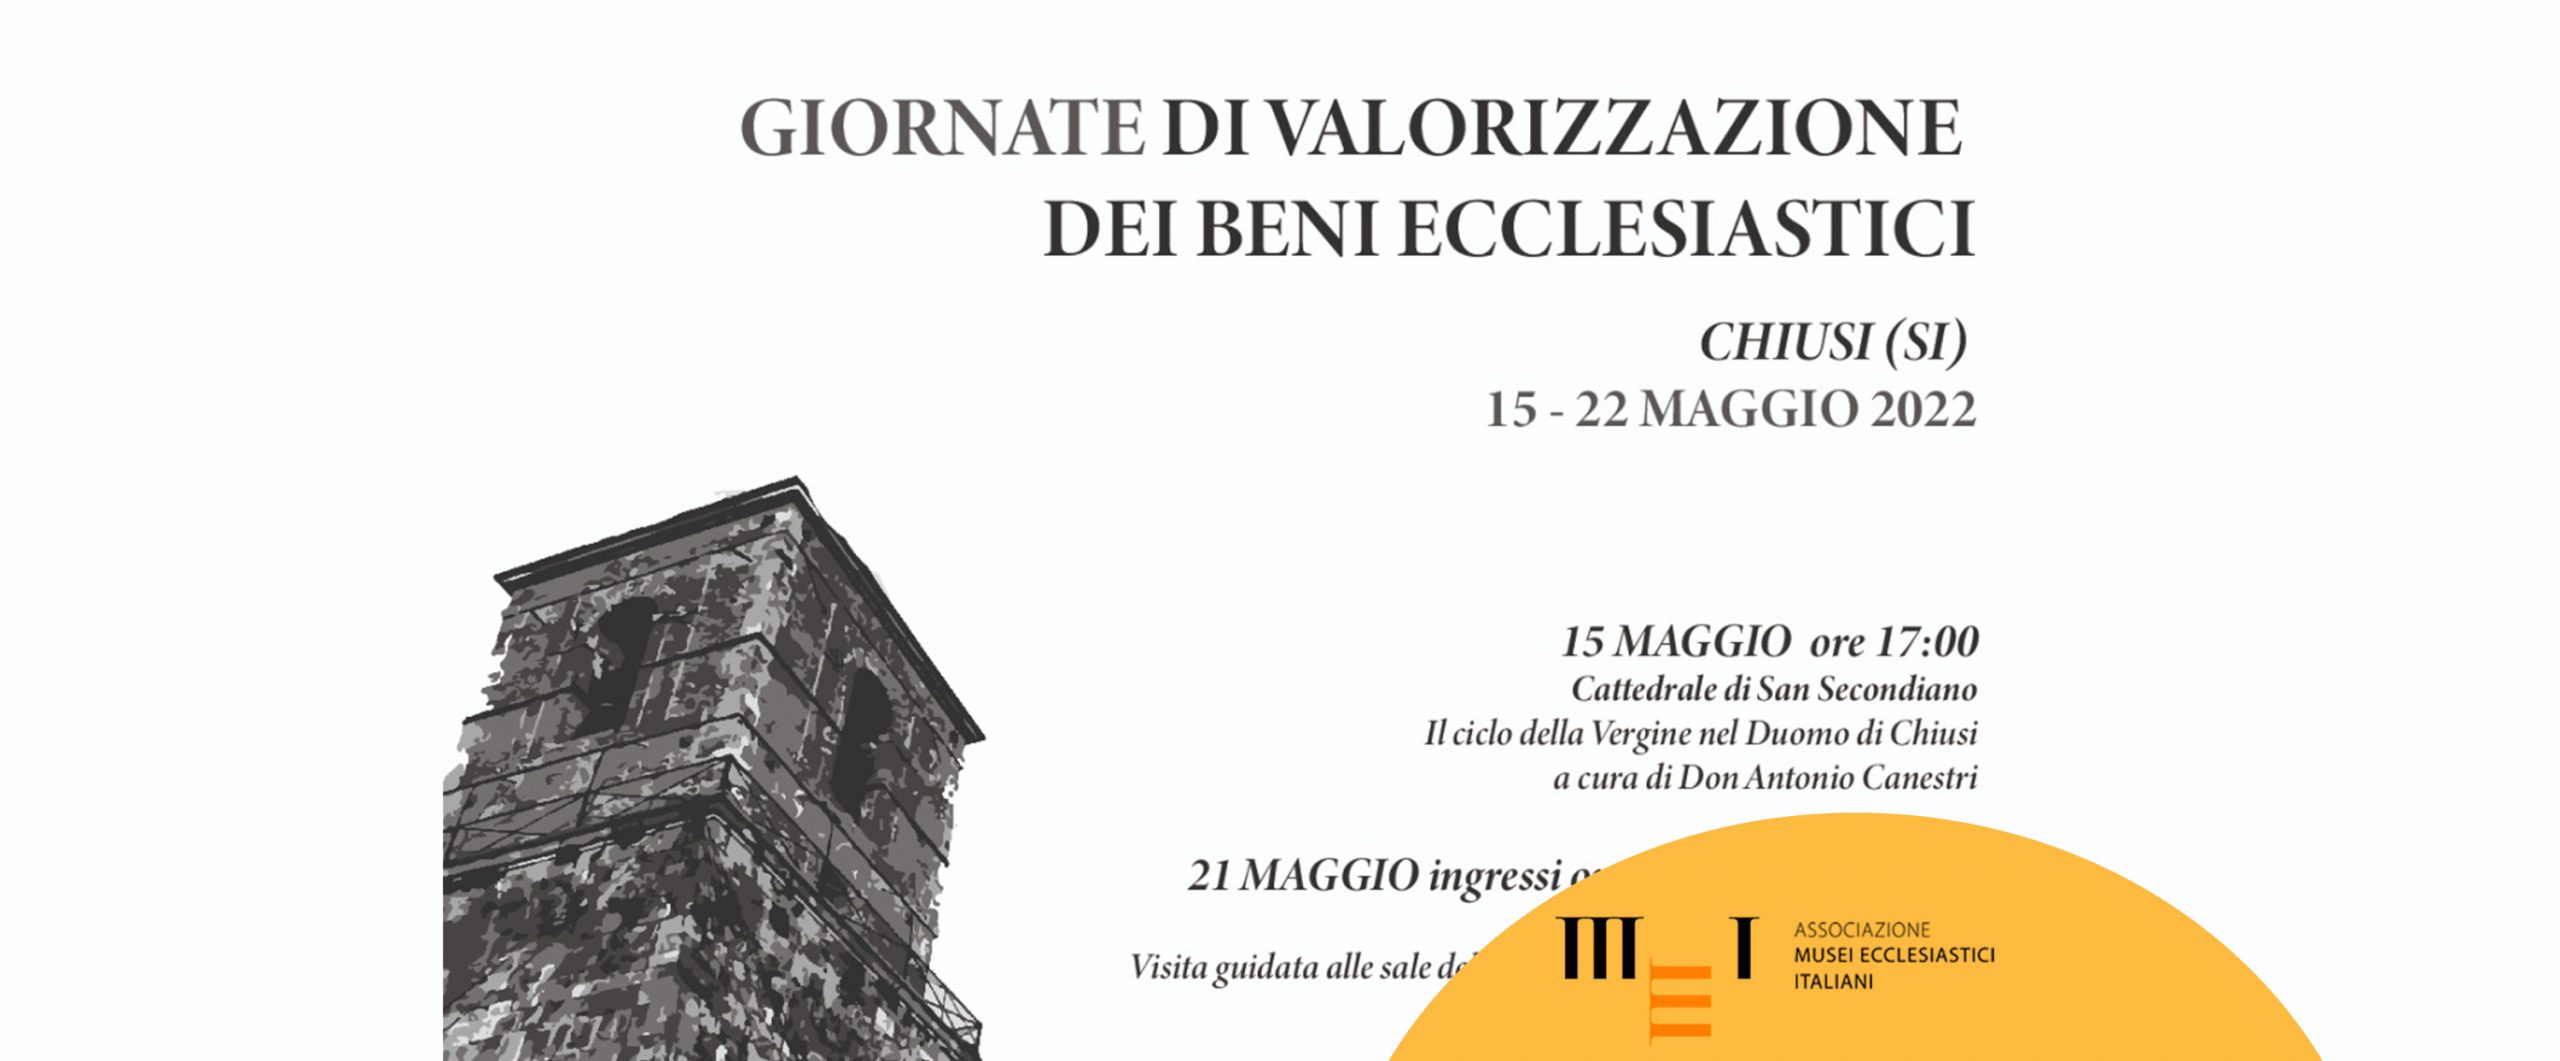 Giornate di Valorizzazione dei Beni Ecclesiastici a Chiusi (Siena) 15-22 maggio 2022